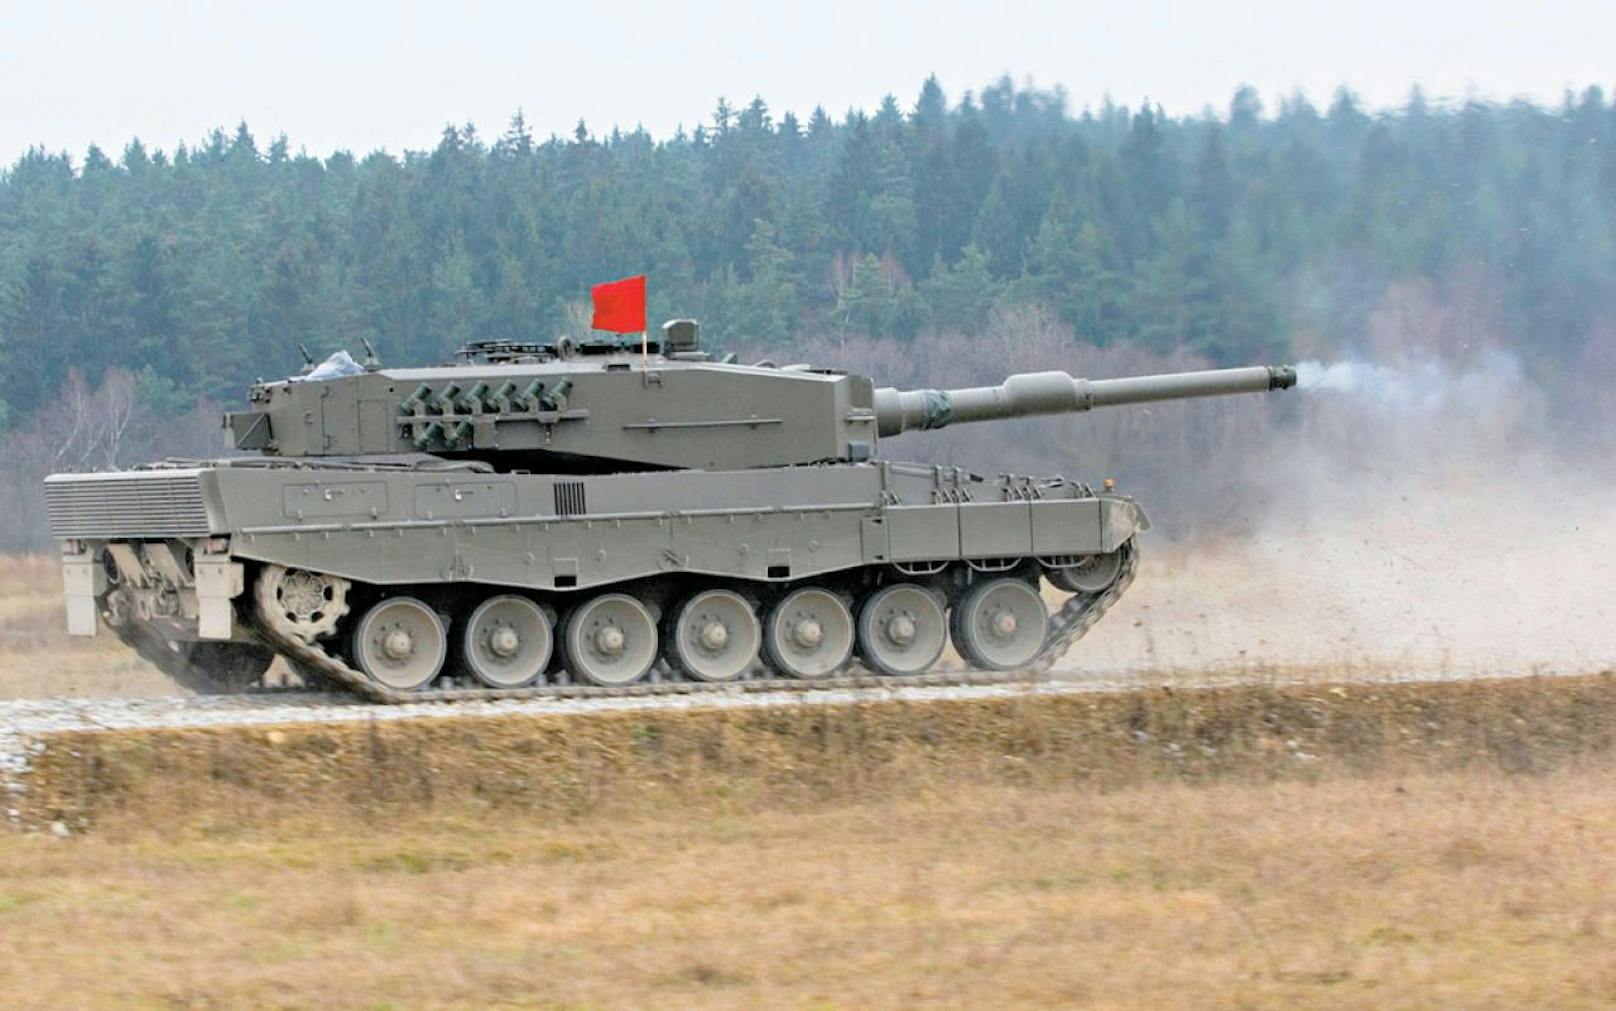 Heer verkauft Panzer zum Schleuderpreis an Lettland